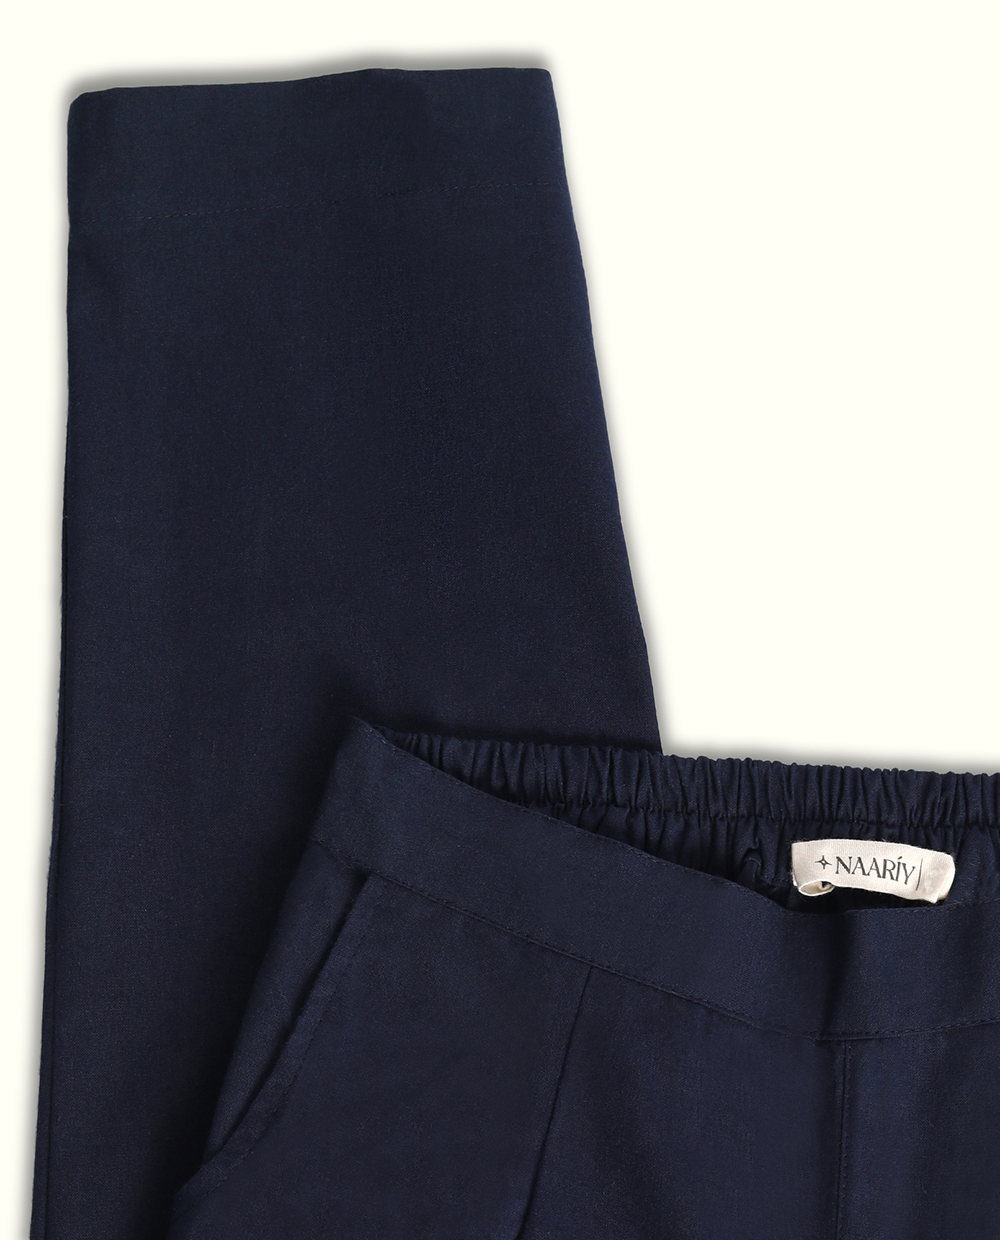 Wrap Pants' Silk Blue – Zootzu Garb